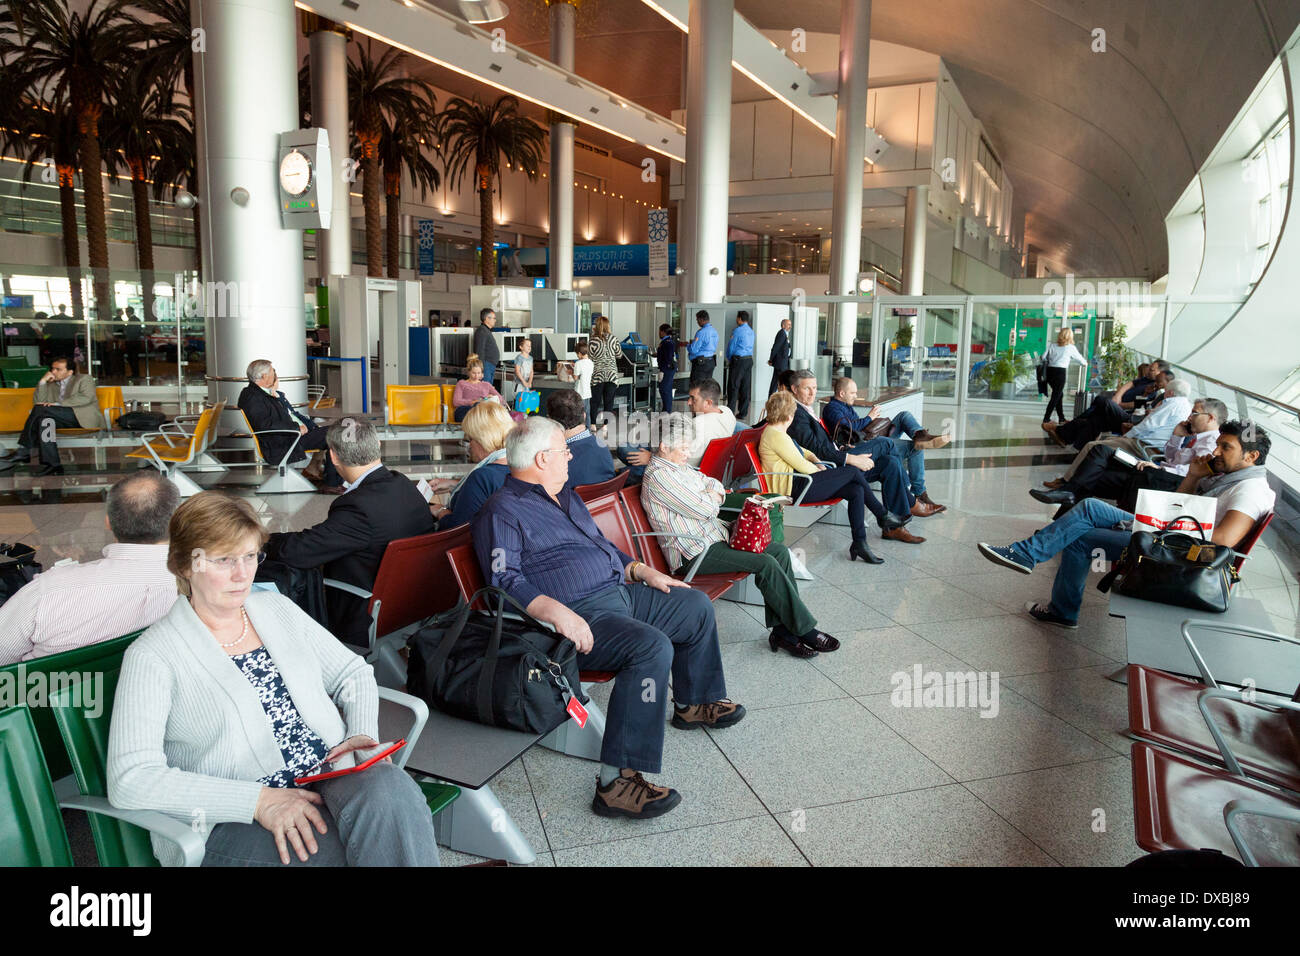 Fluggäste warten auf Ihren Flug am Tor, Dubai International Airport Terminal, VAE, Vereinigte Arabische Emirate Naher Osten Stockfoto